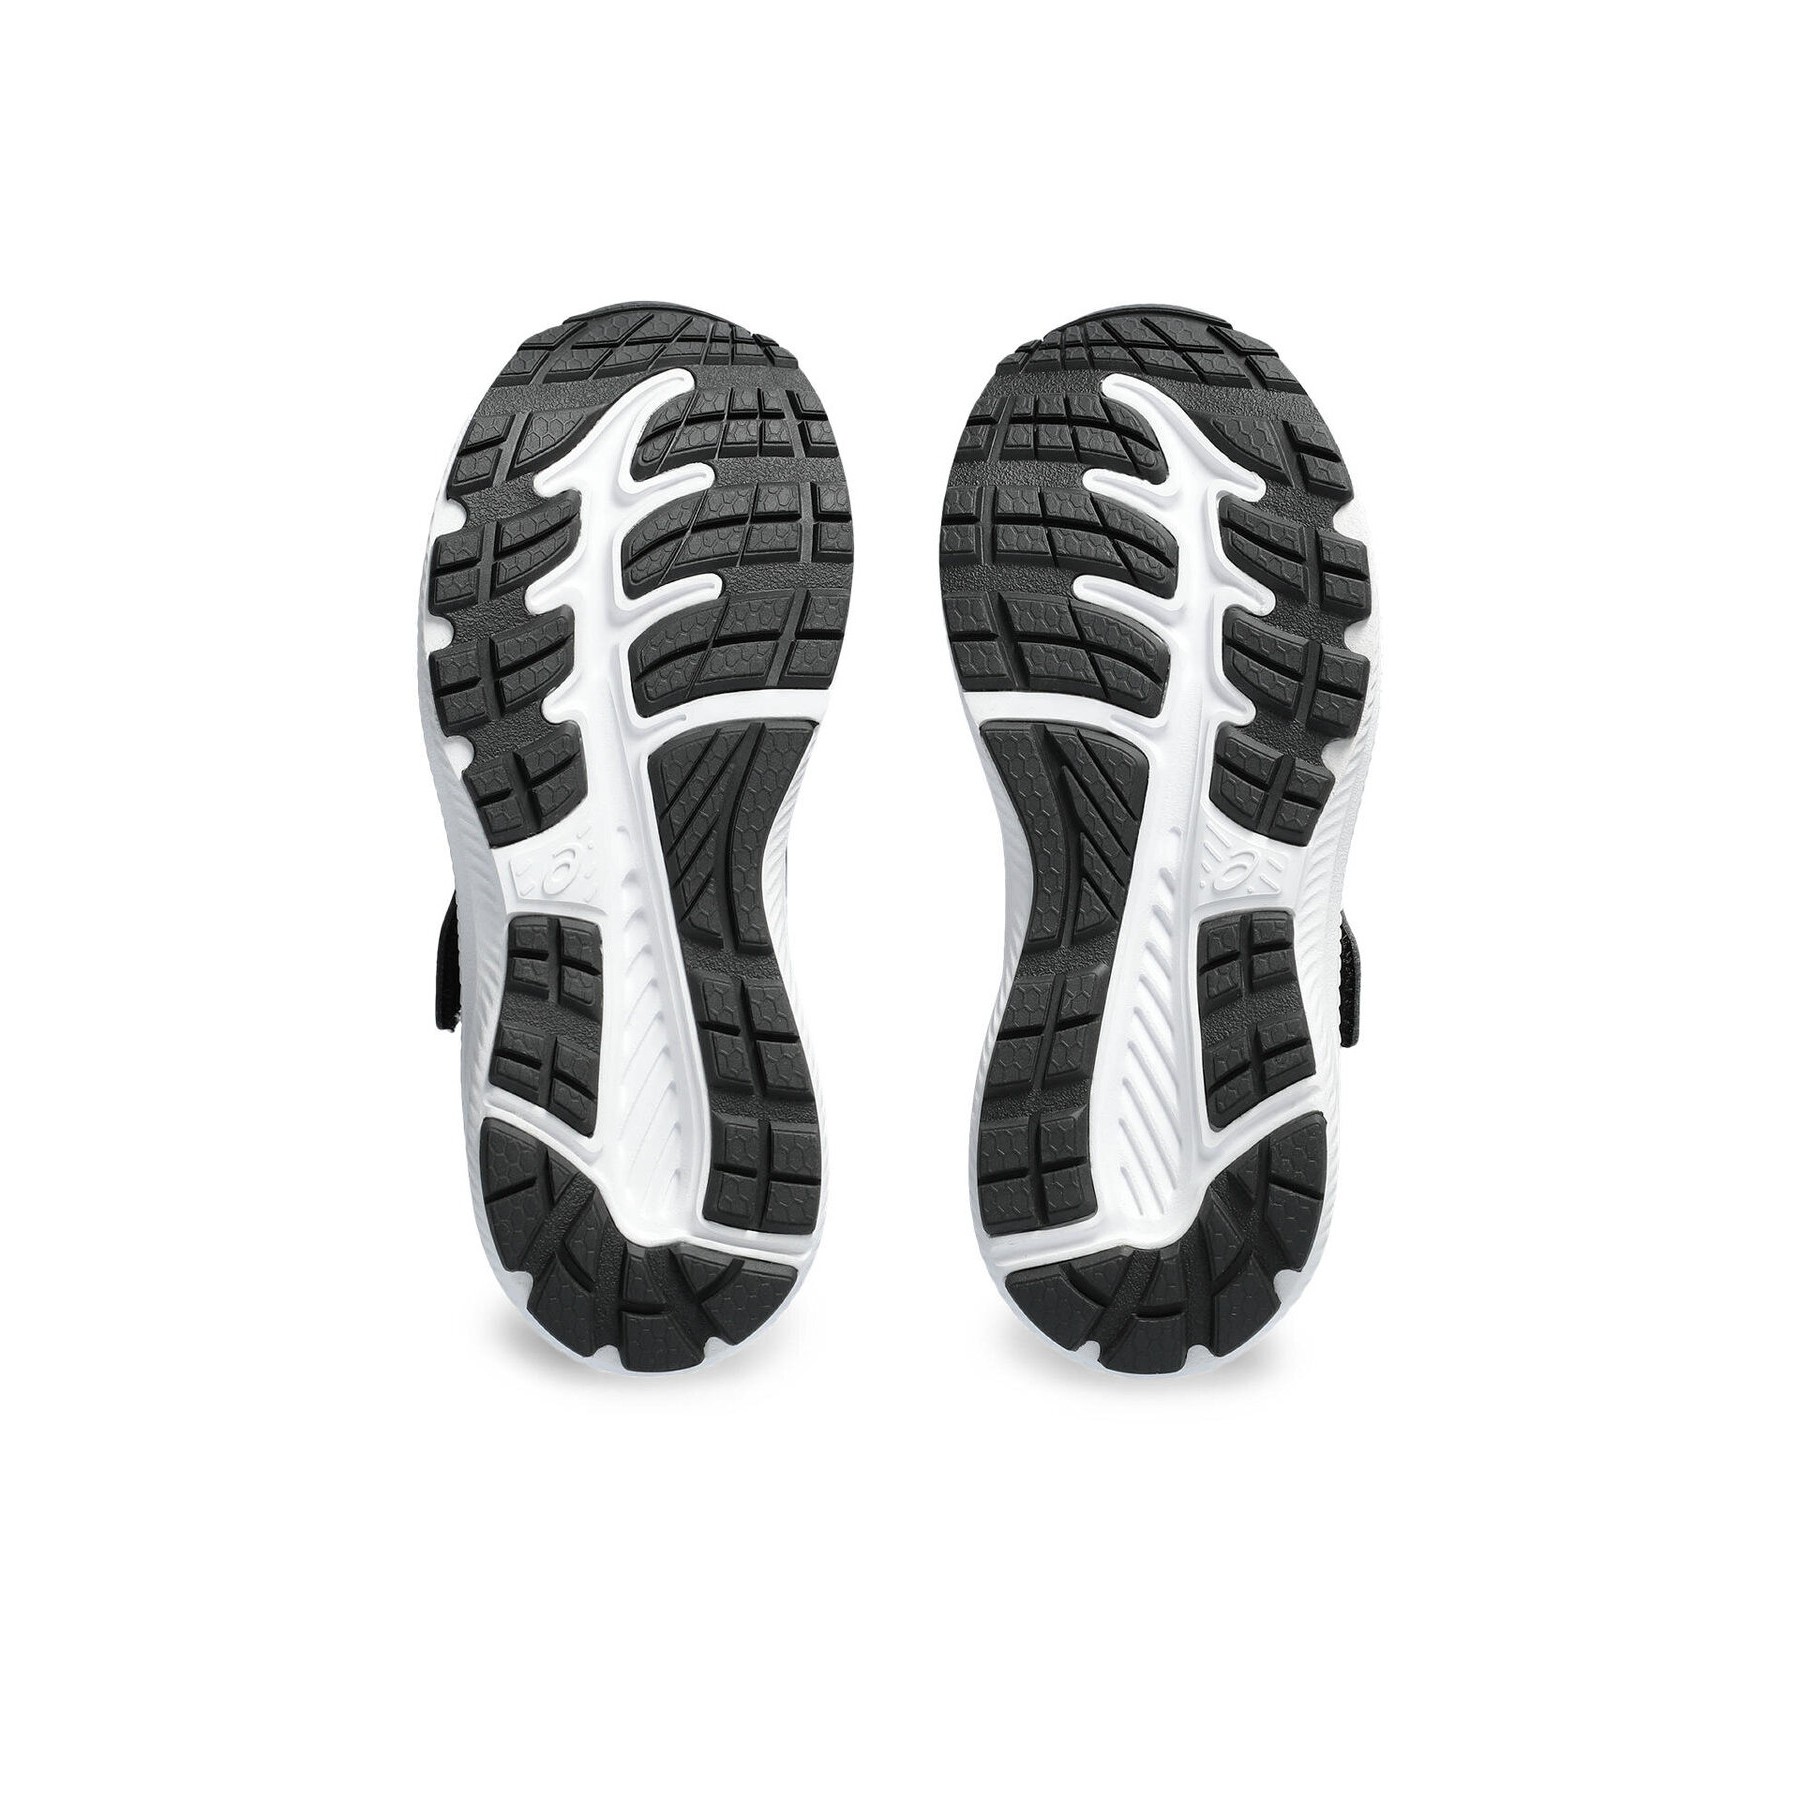 Asics Contend 8 Çocuk Siyah Spor Ayakkabısı (1014A258-008)